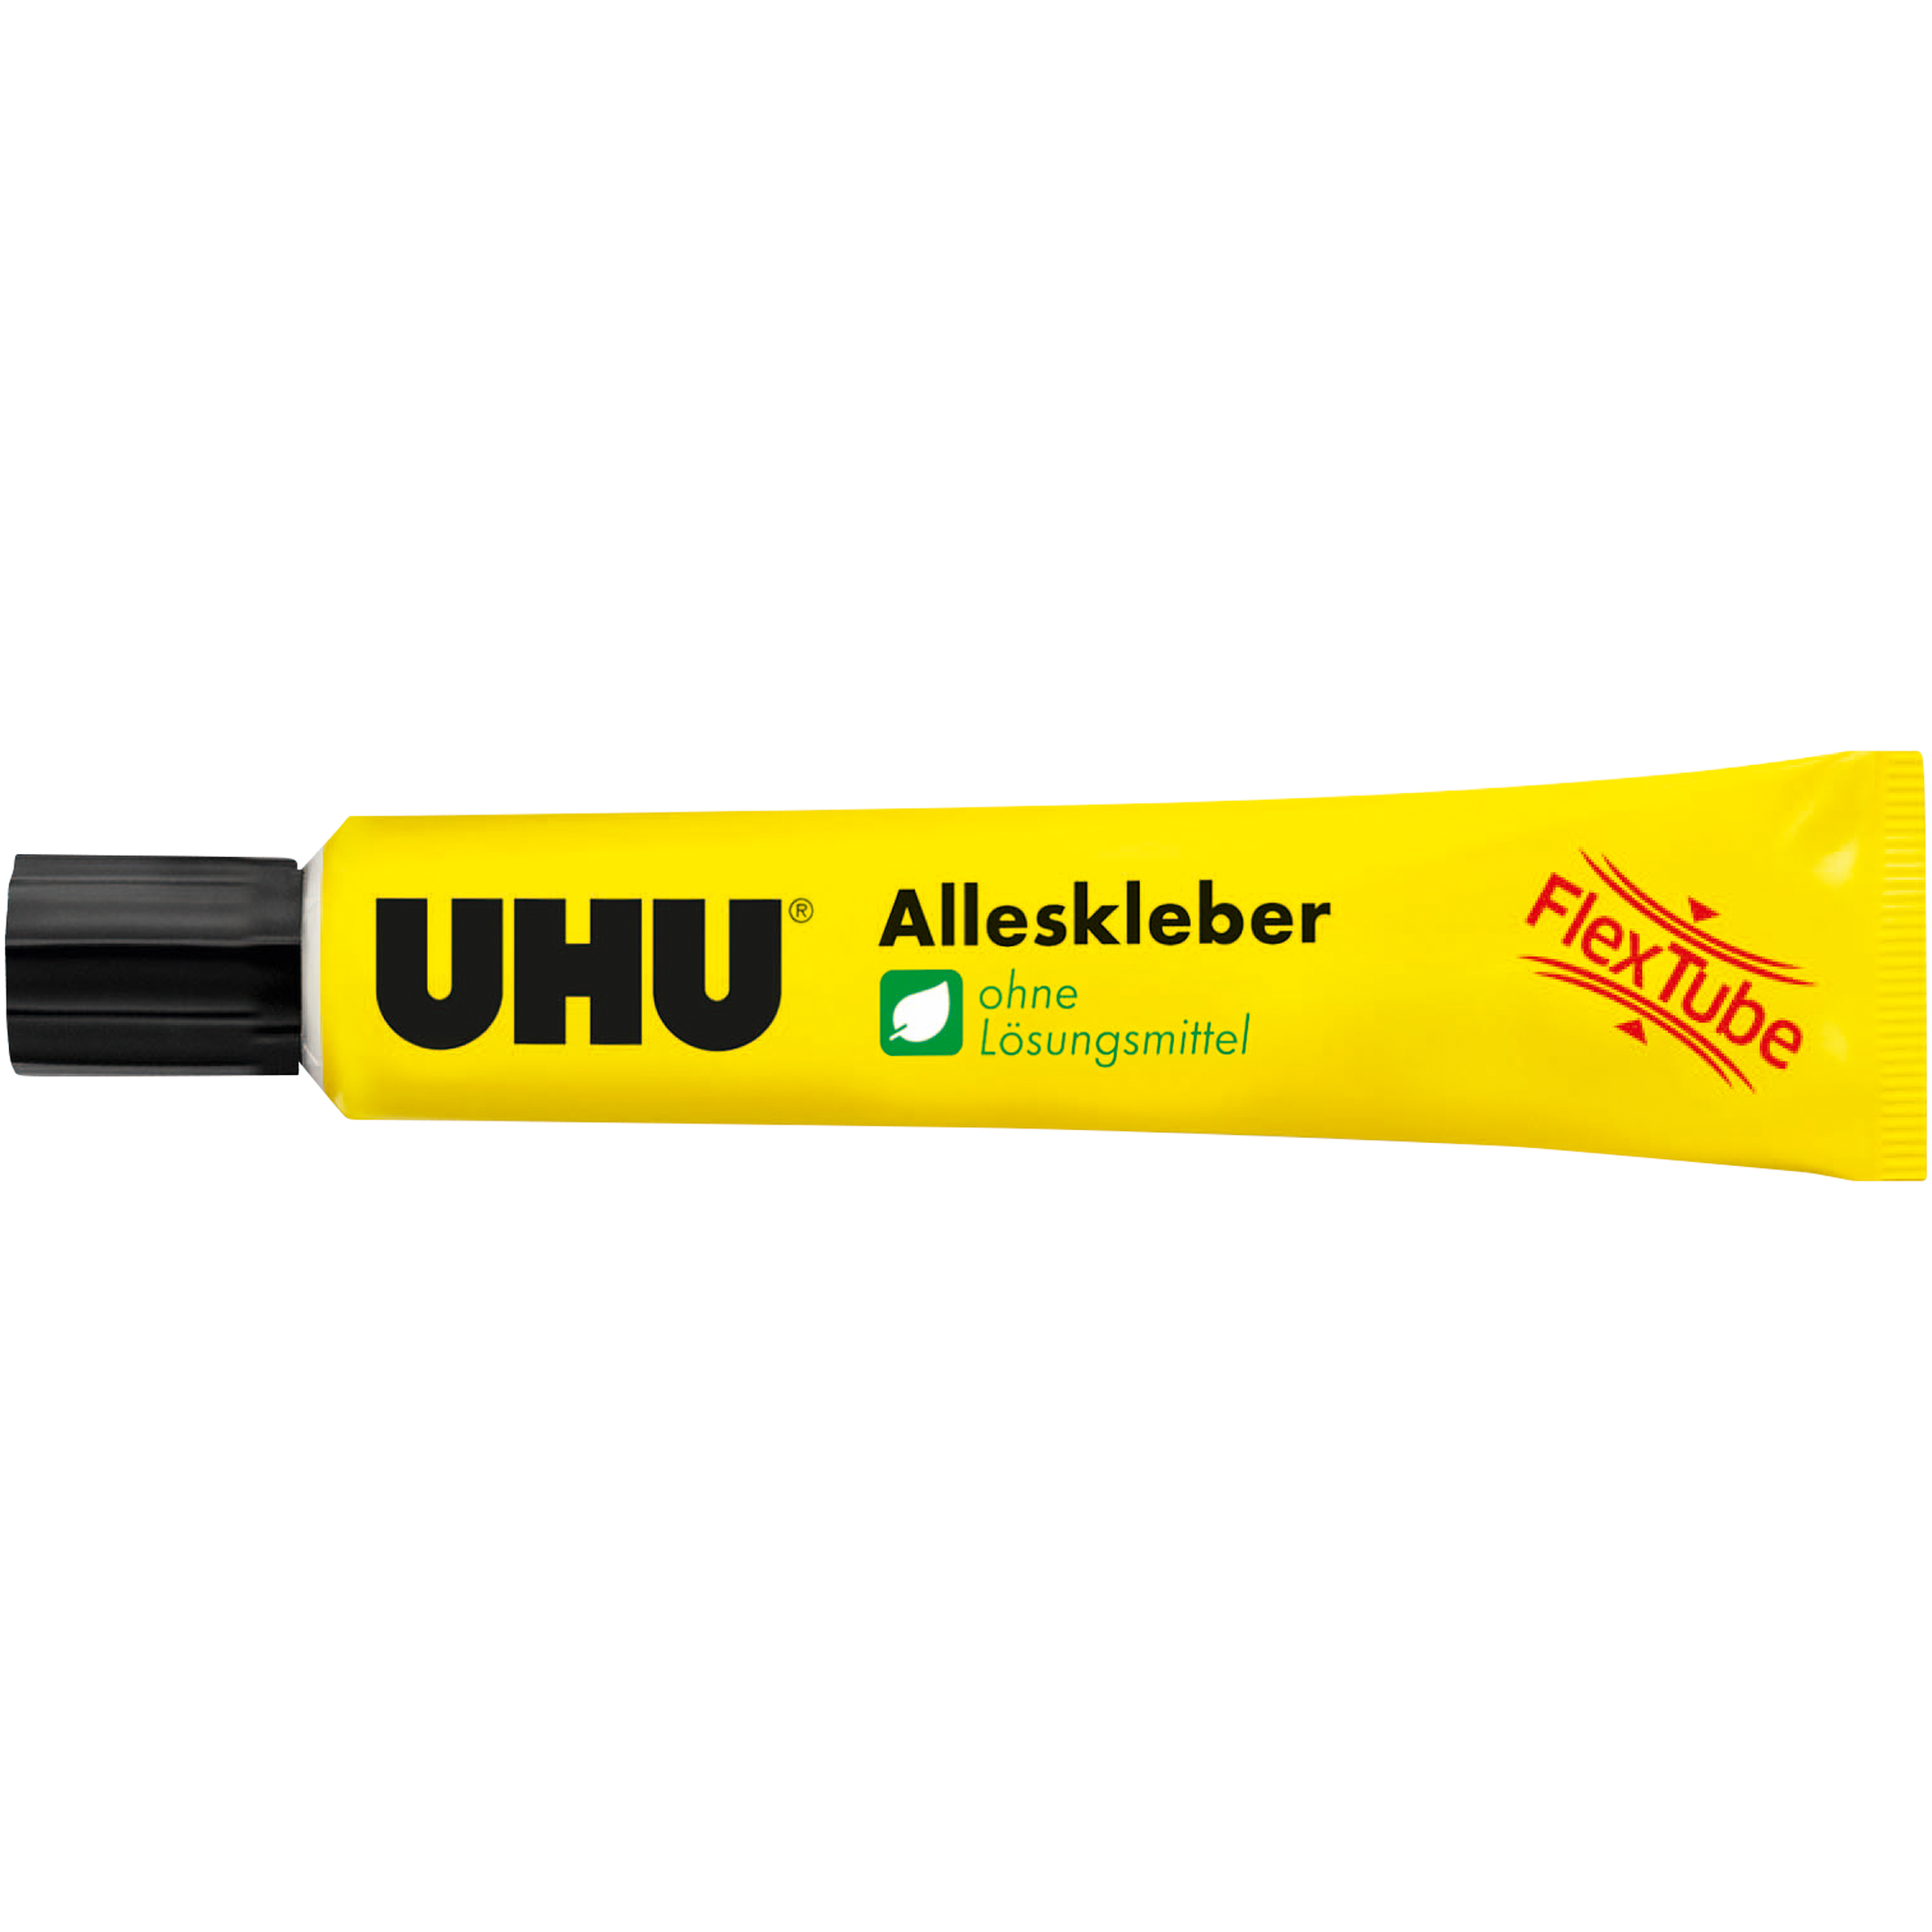 UHU® Alleskleber FLEX + CLEAN ohne Lösungsmittel